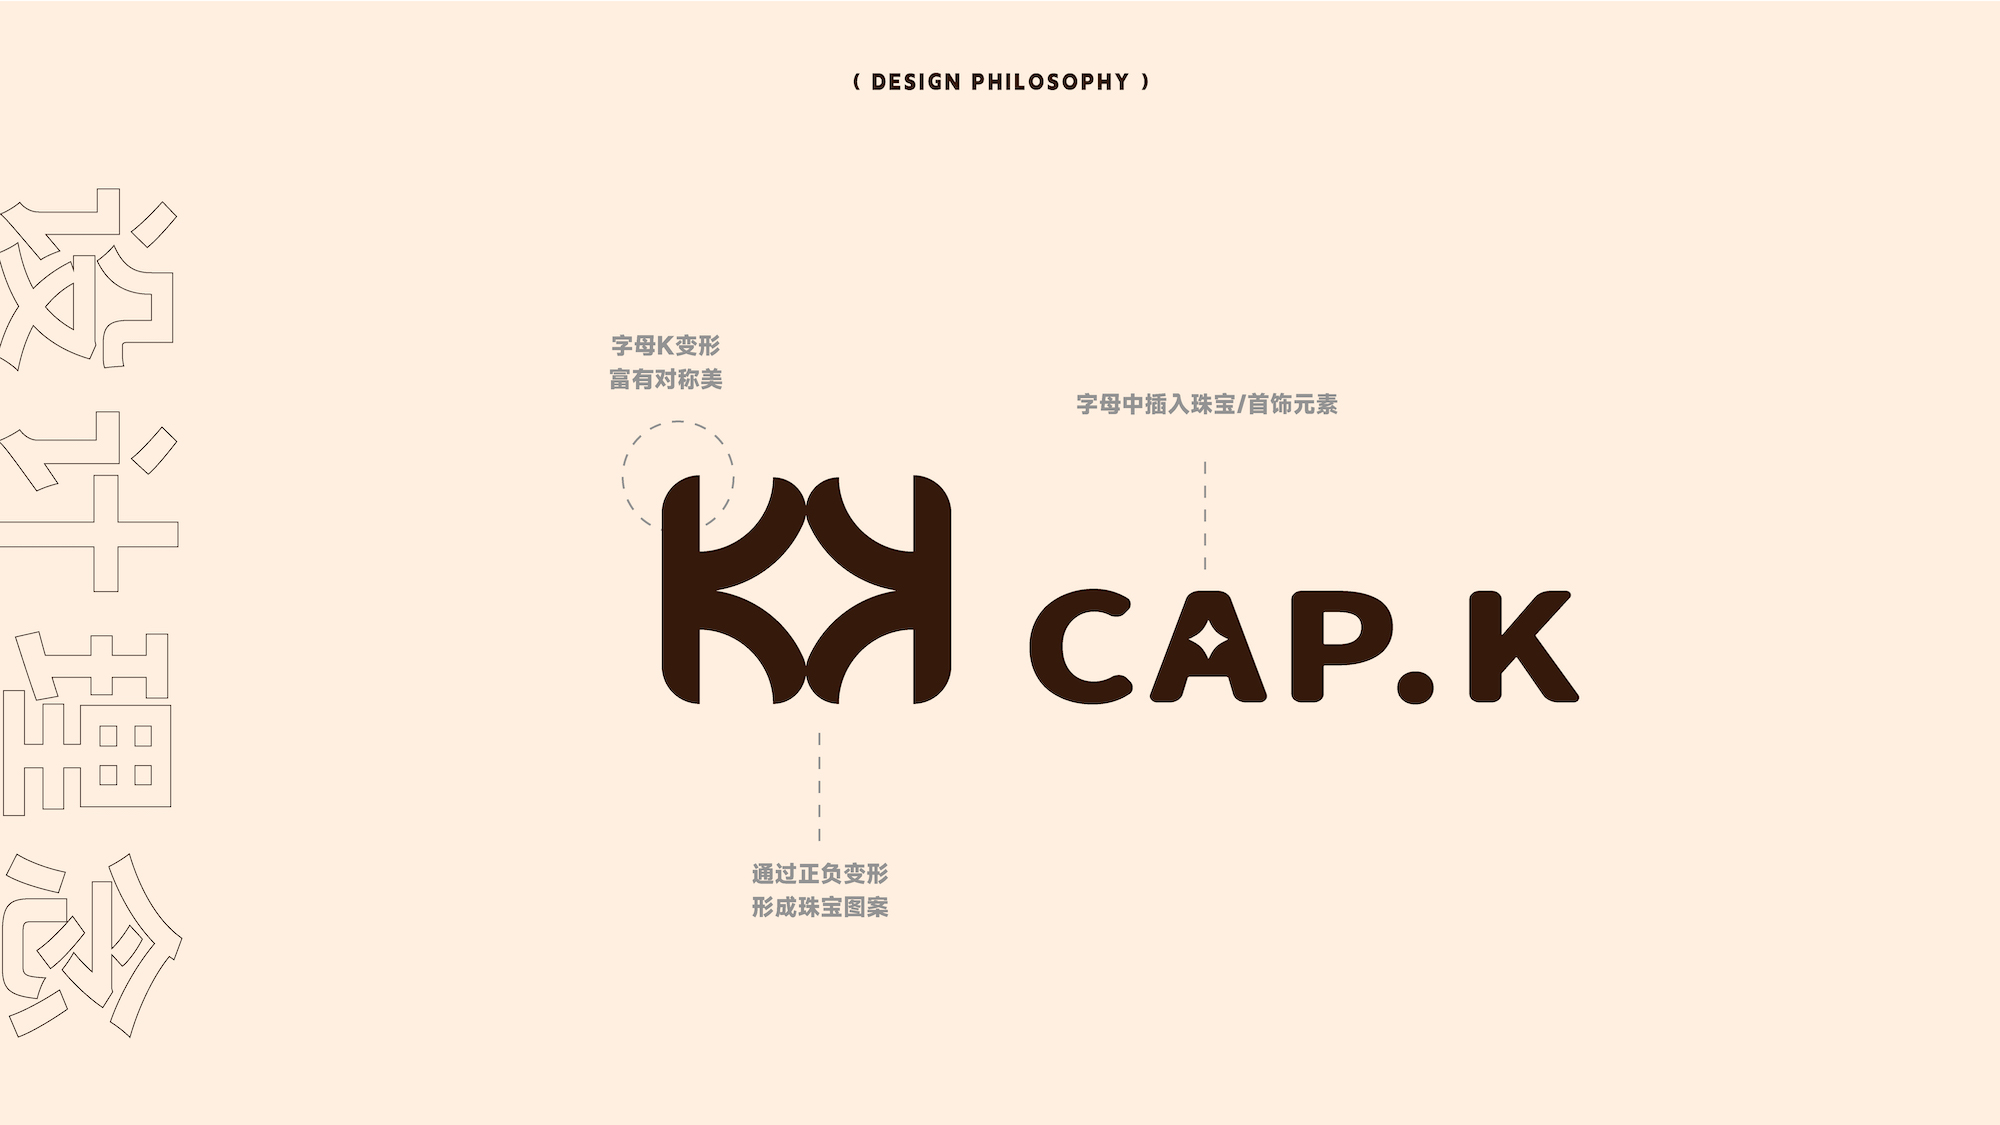 【细节设计】饰品店VI《cap.k》服帽品牌LOGO设计